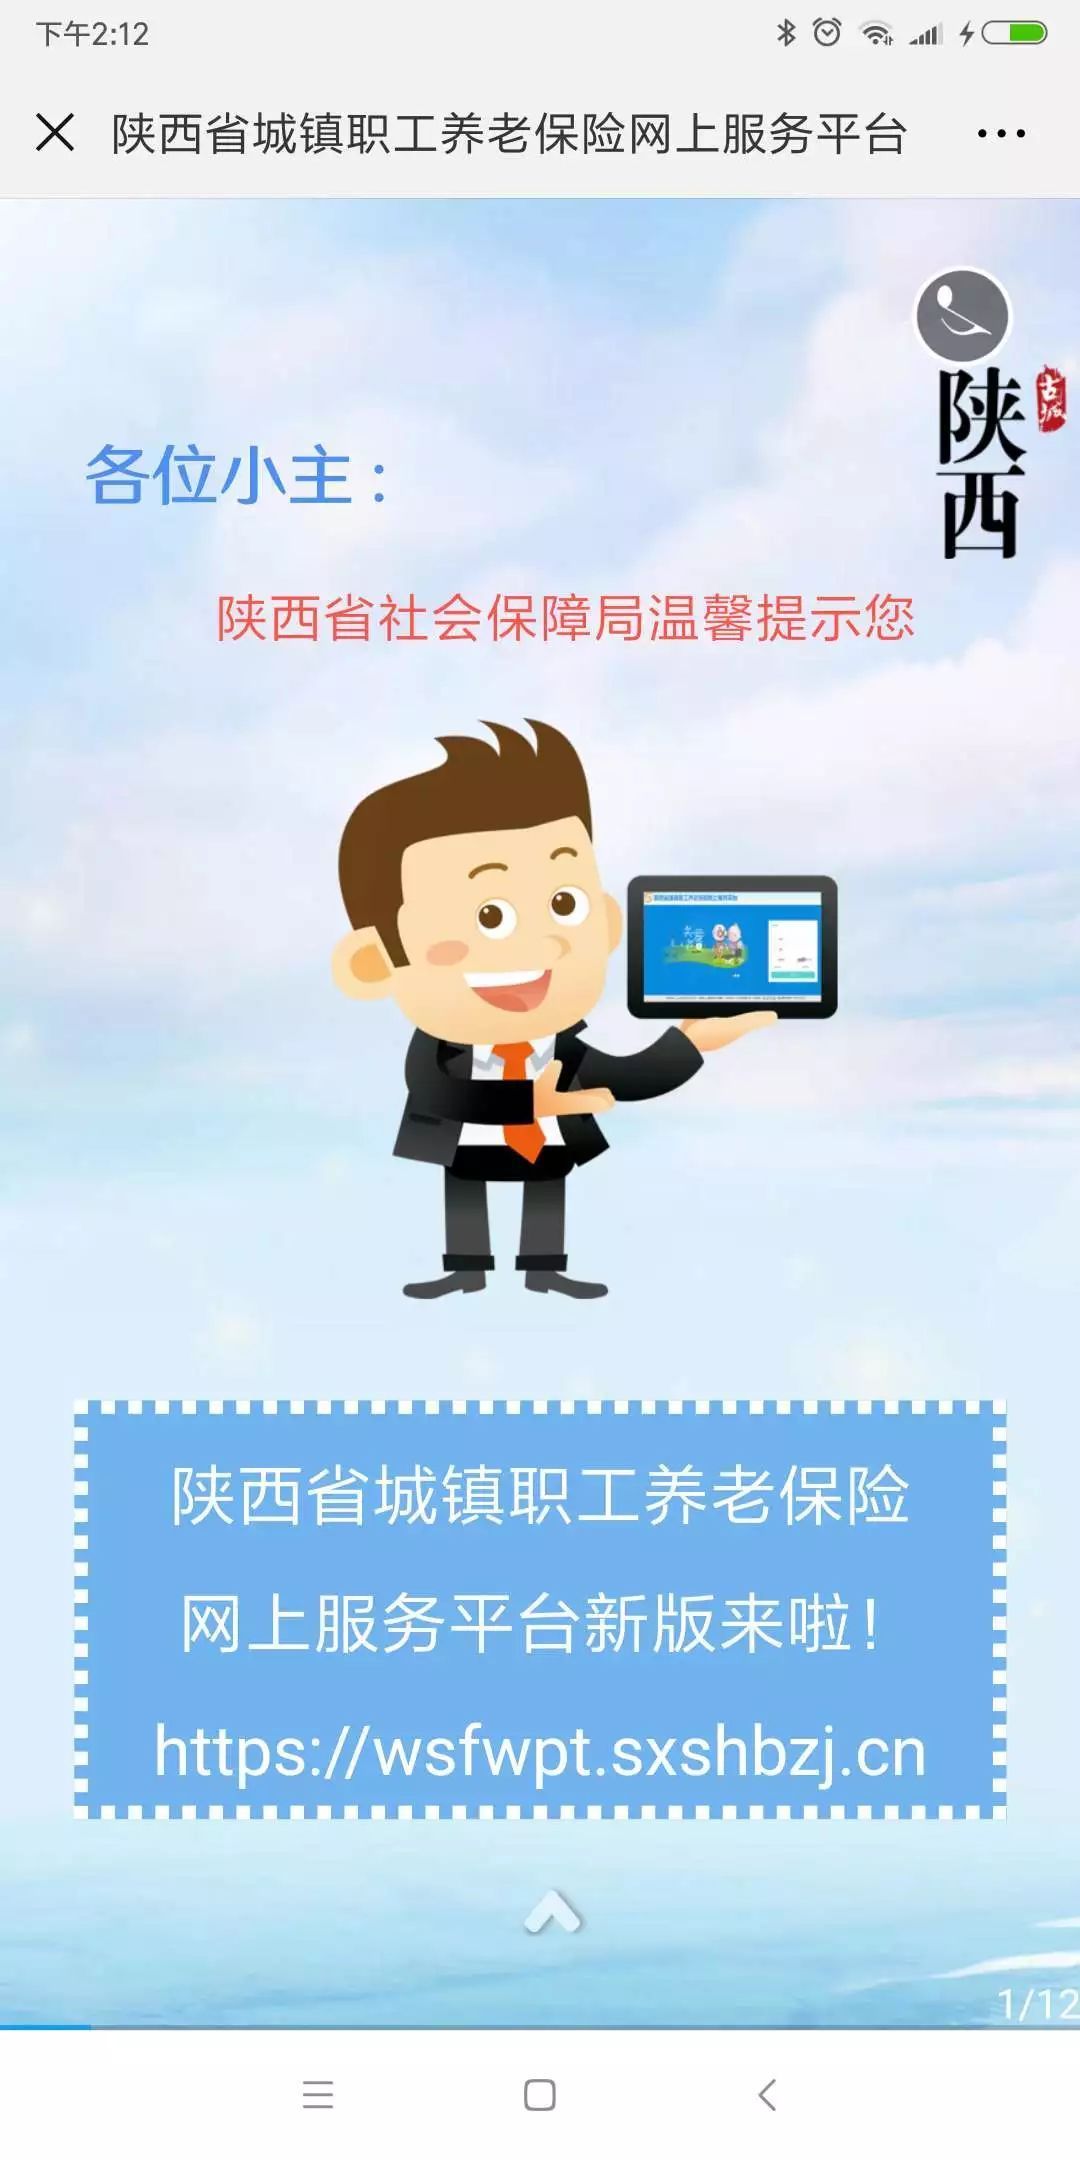 【实用收藏】陕西省城镇职工养老保险网上服务平台